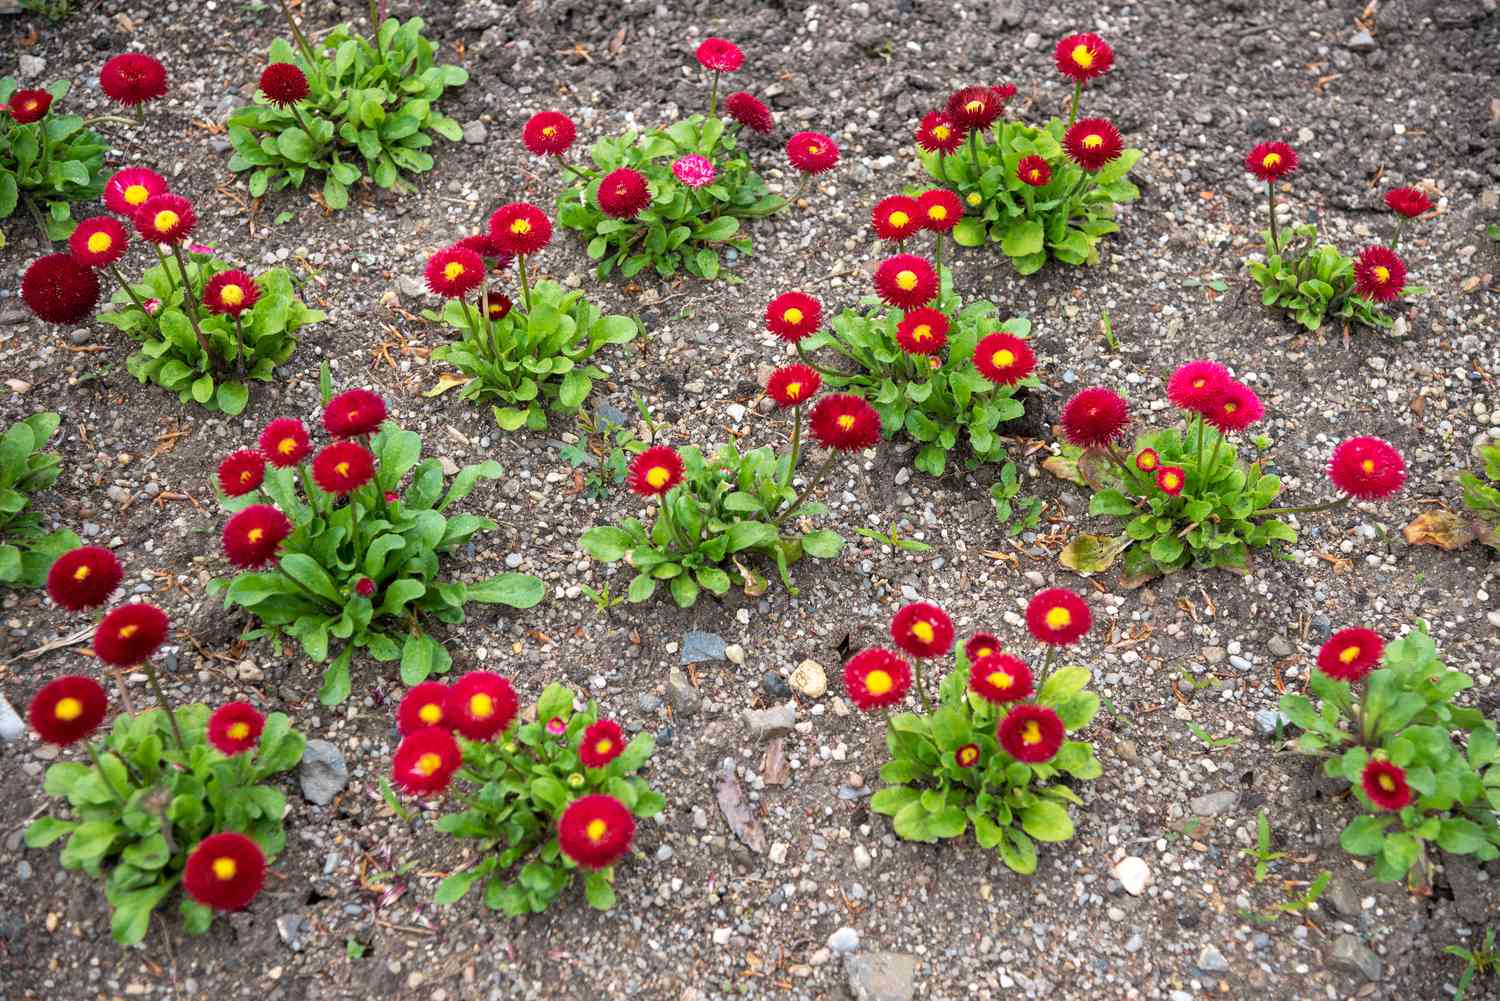 Englische Gänseblümchenblüten mit roten Strahlenblättern, die gelbe Zentren umgeben, auf Kiesboden